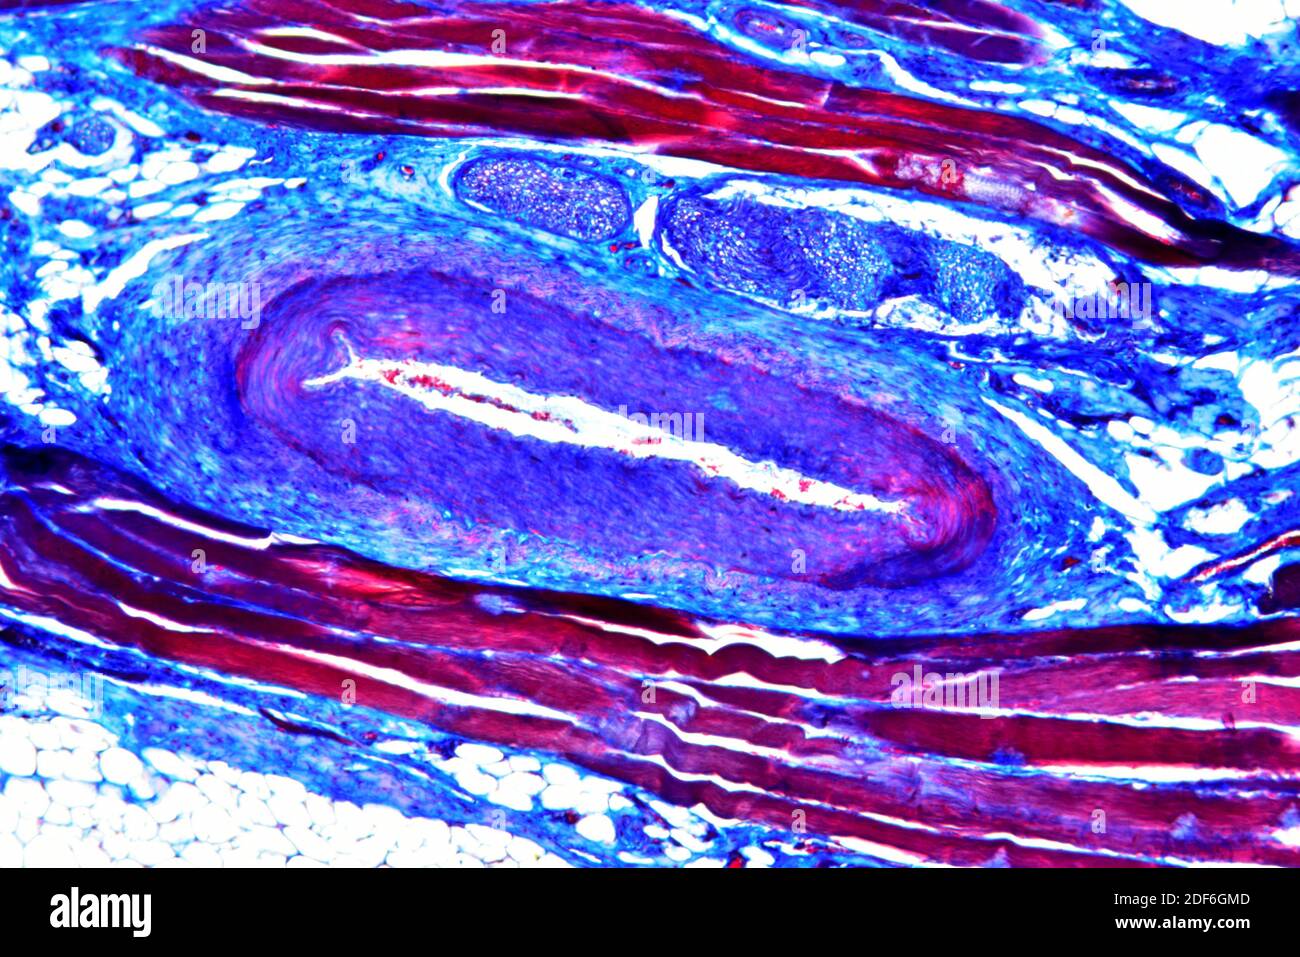 Arteria (vaso sanguíneo). Microscopio óptico X100. Foto de stock